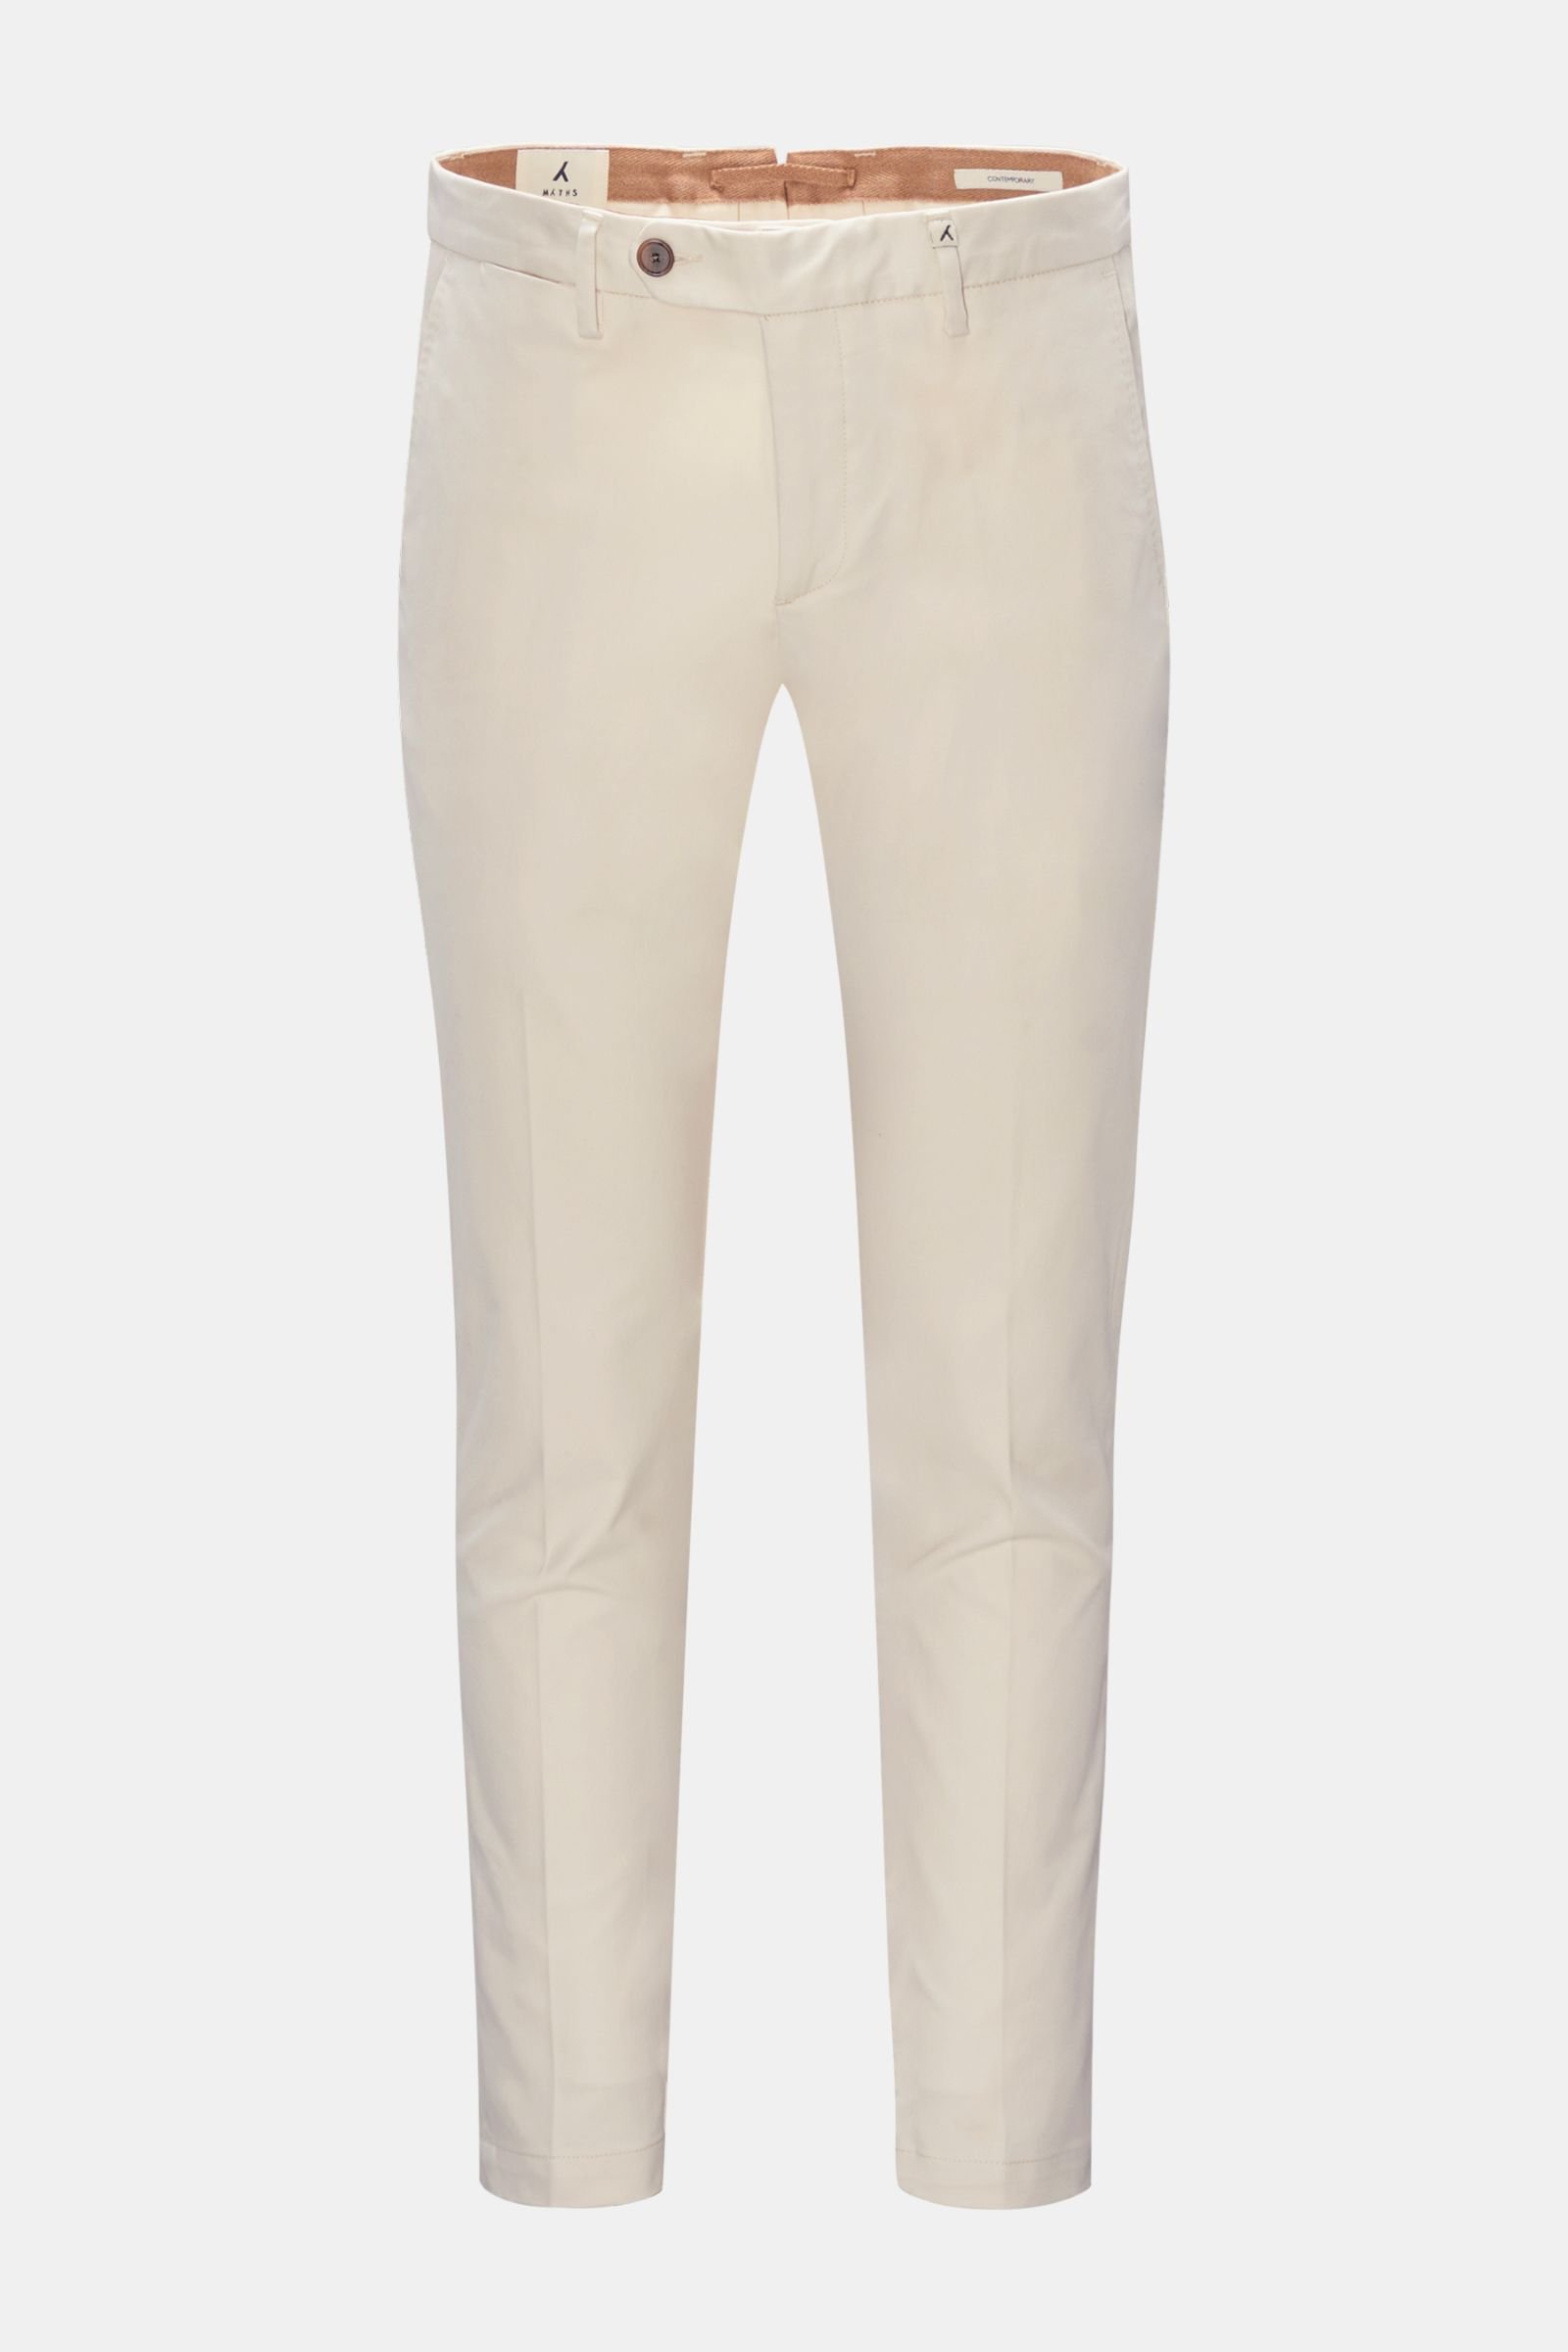 Cotton trousers 'Contemporary' cream